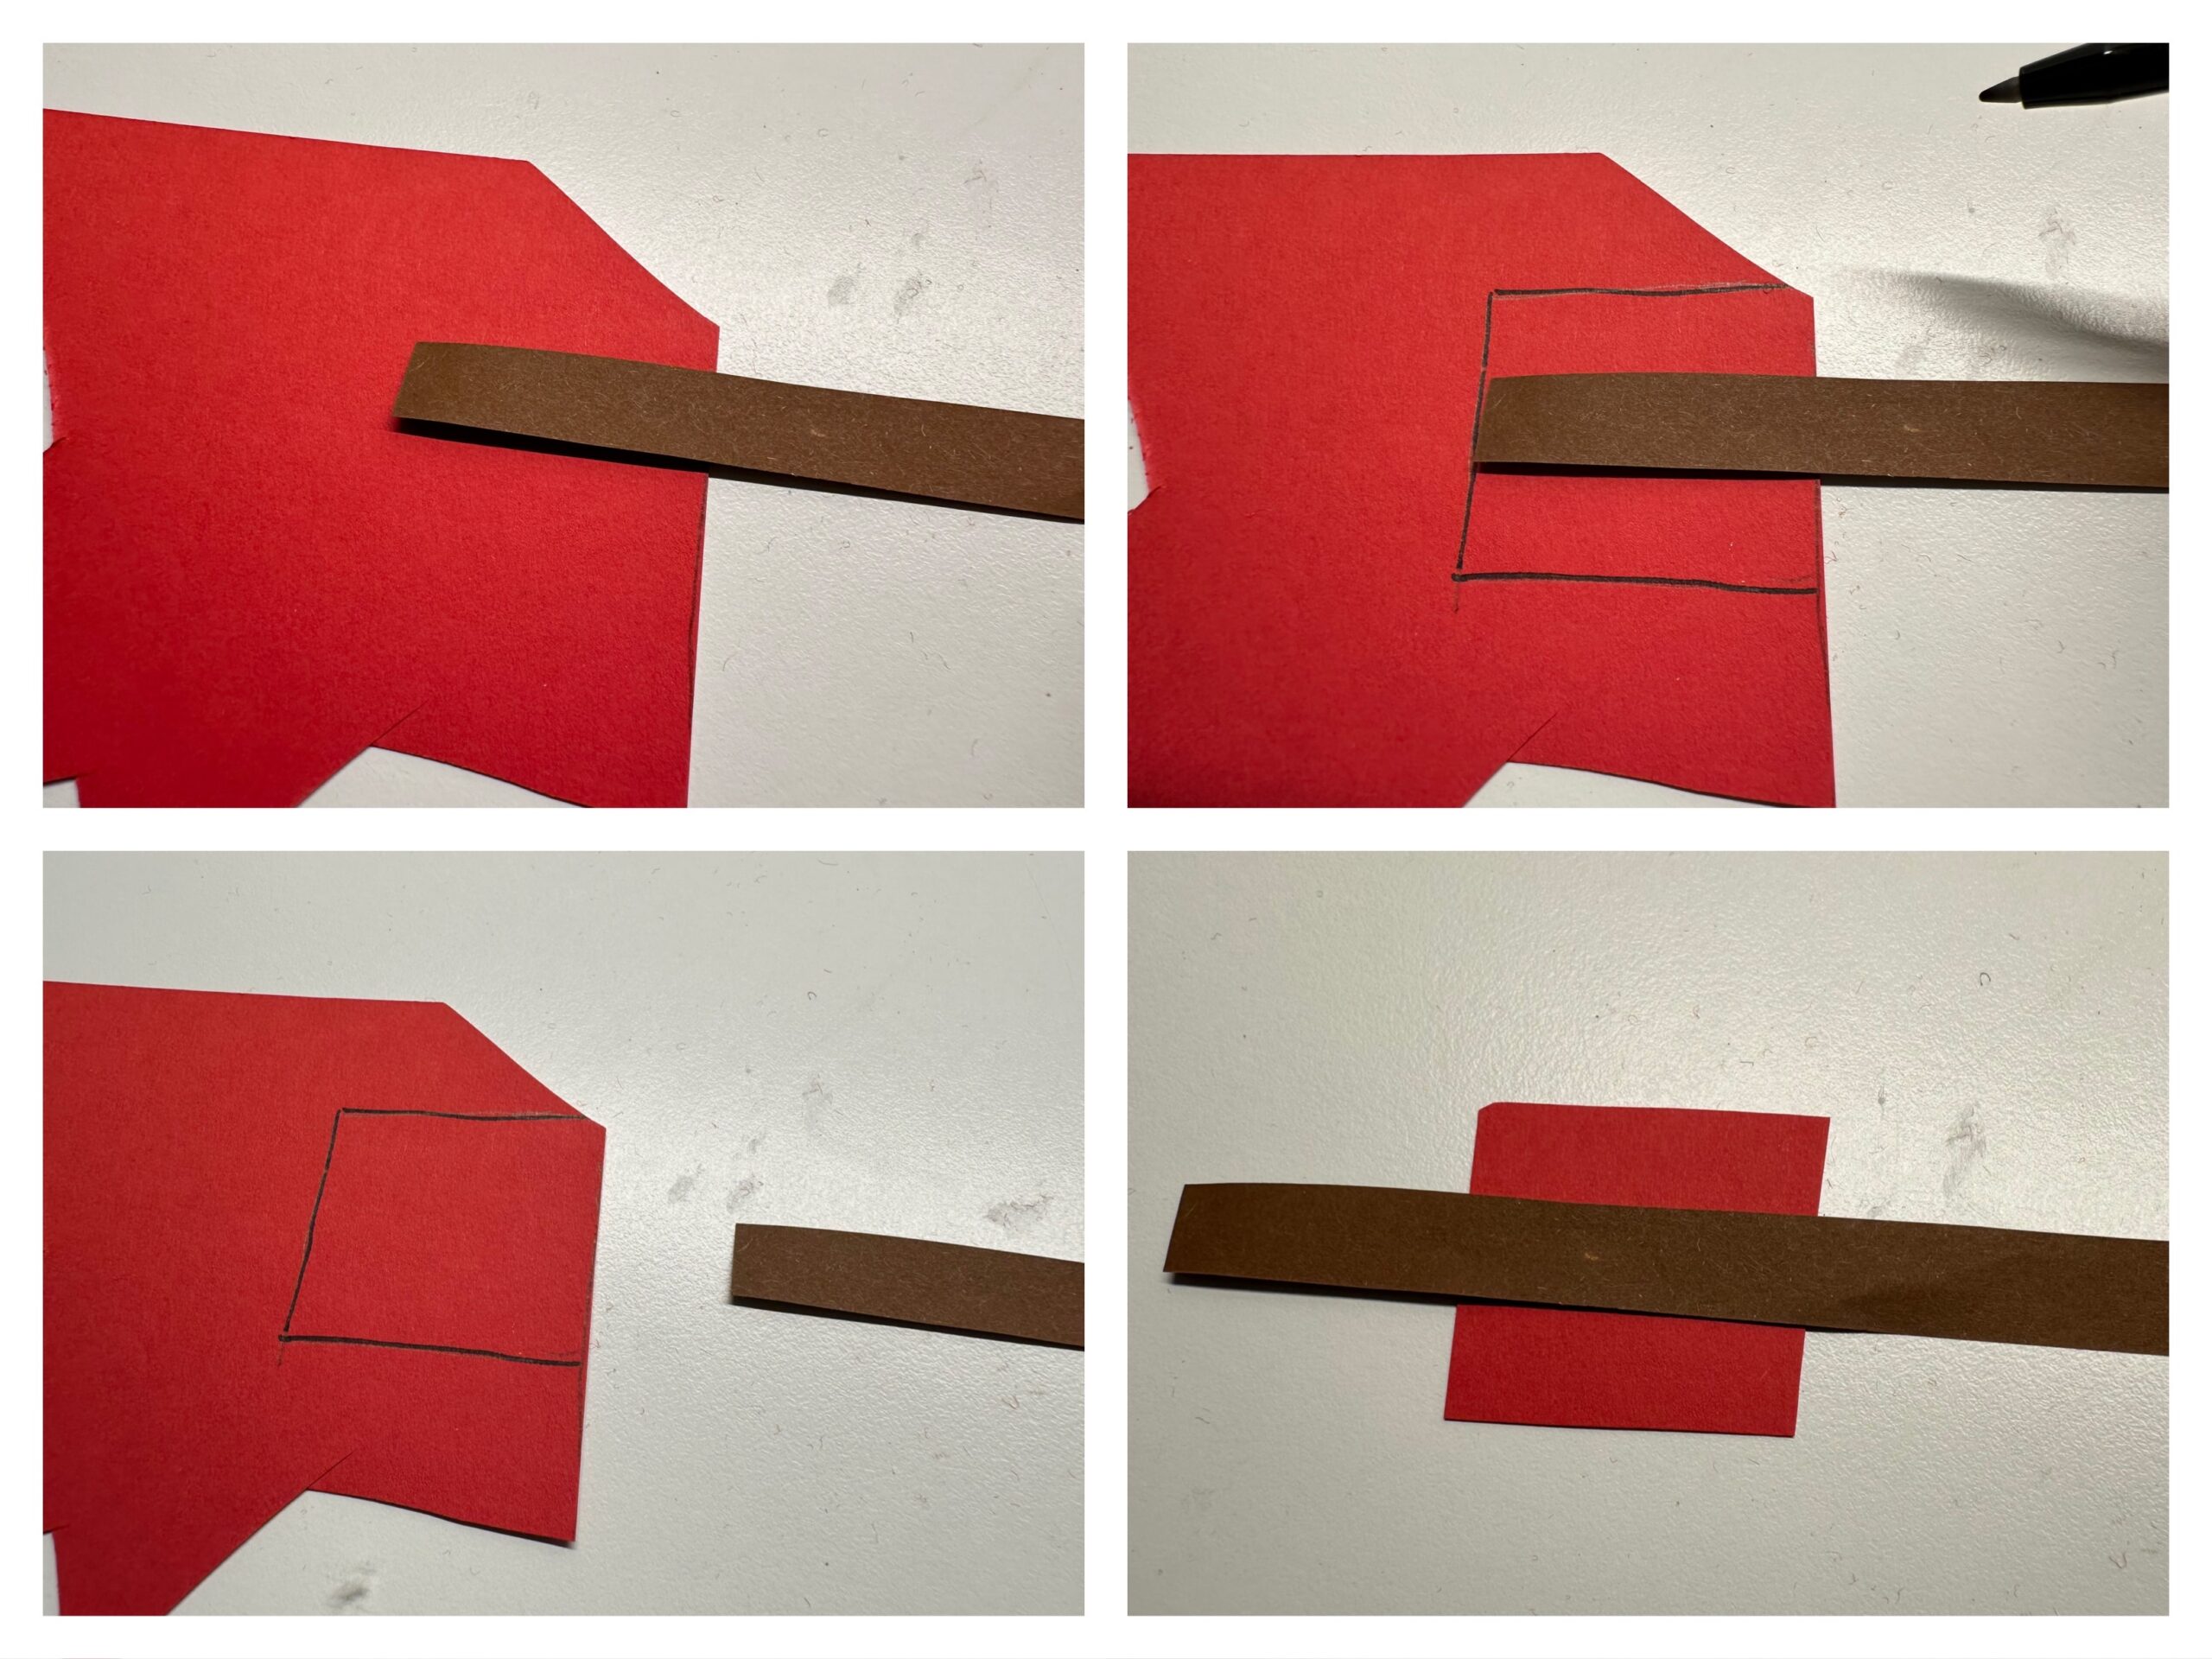 Bild zum Schritt 10 für das Bastel- und DIY-Abenteuer für Kinder: 'Schneidet einen dünnen Streifen vom braunen Tonpapier ab. Er muss...'